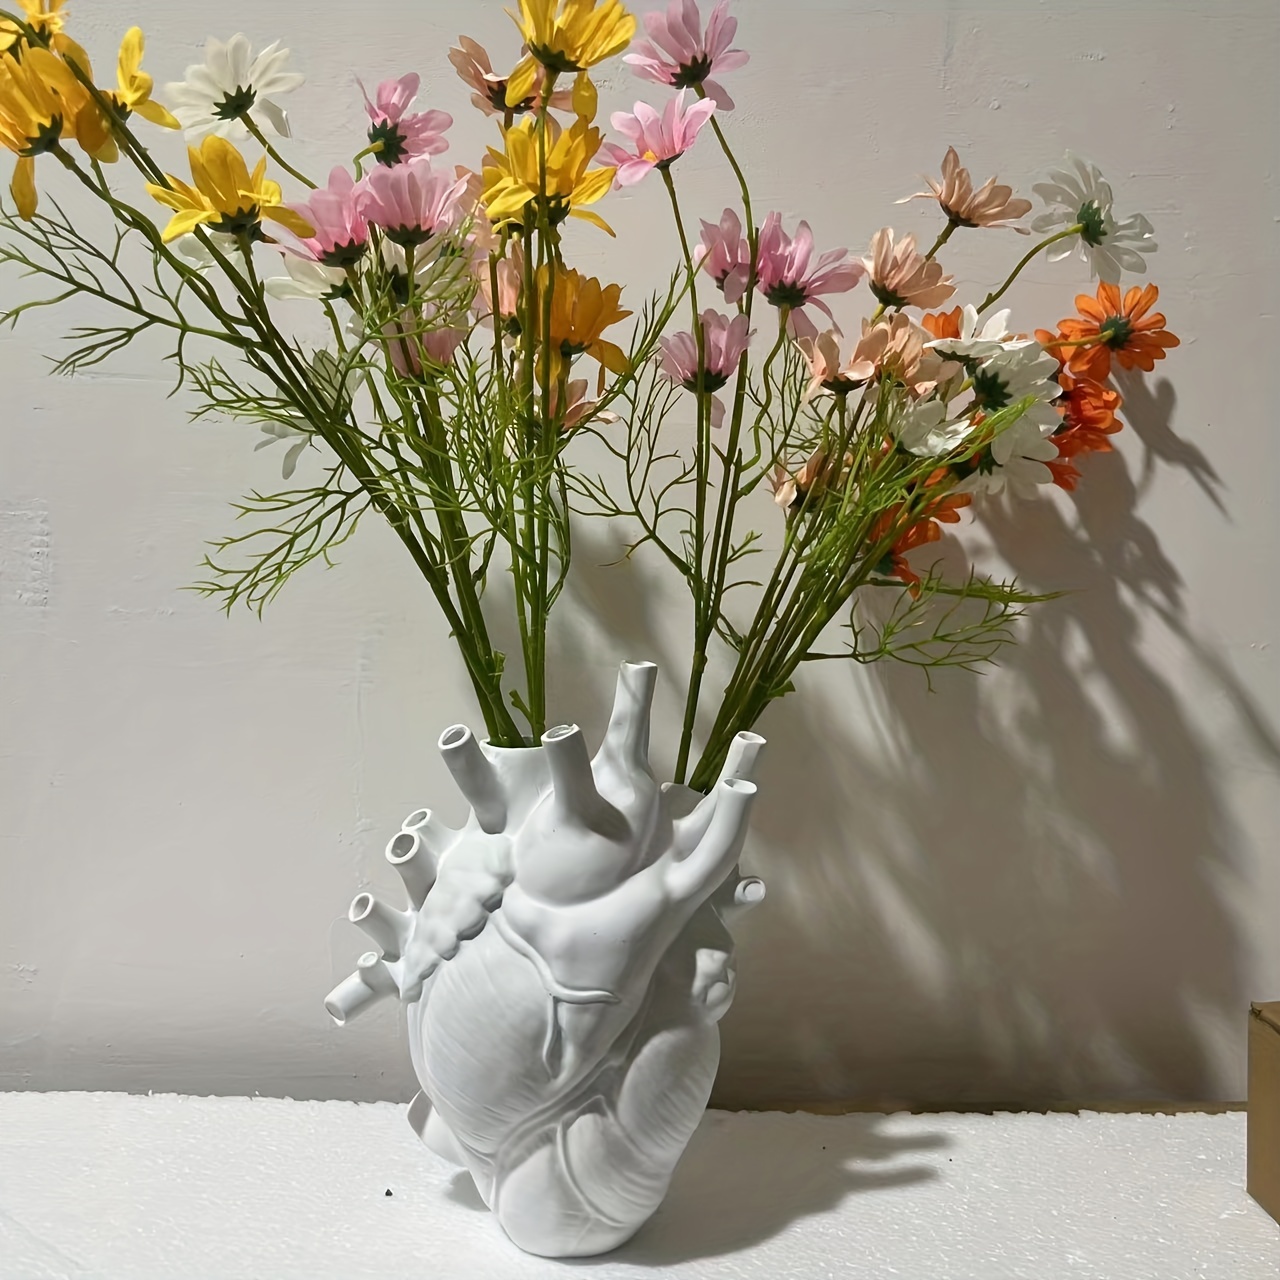 1個、シミュレーションハートフラワーアレンジメント新バージョンハートモデリングホームデスクトップ装飾樹脂花瓶装飾品、モダンな花瓶、ホームデコレーション花瓶、花装飾、プラスチック模造磁器、ホームデコレーション、フェスティバルデコレーション、パーティー  ...